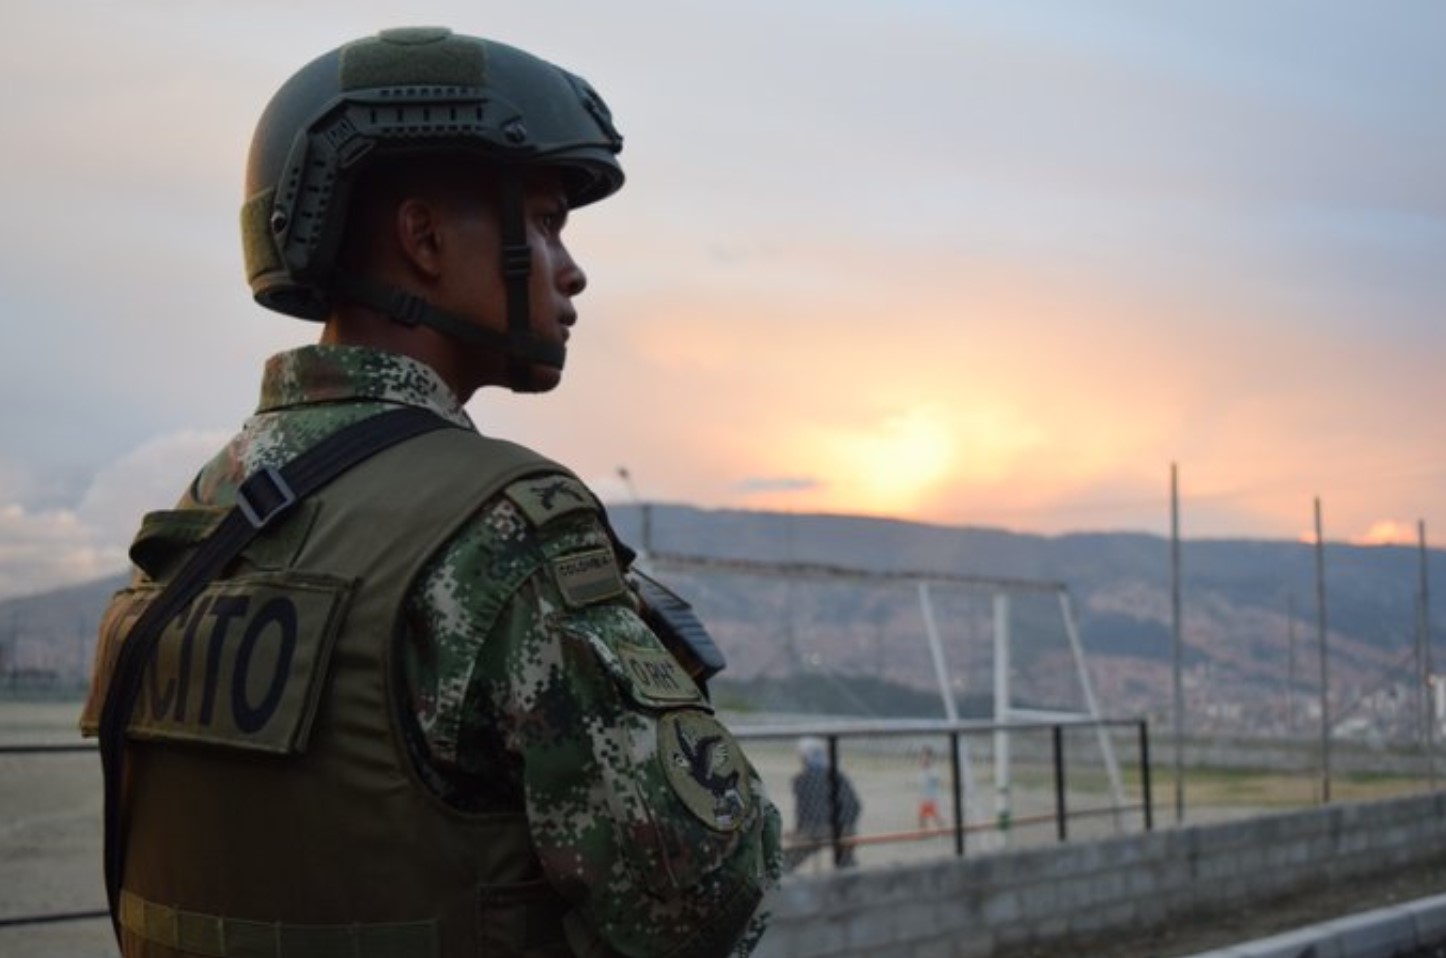 Un soldado muerto y 9 heridos tras accidente con explosivo en Remedios, Antioquia